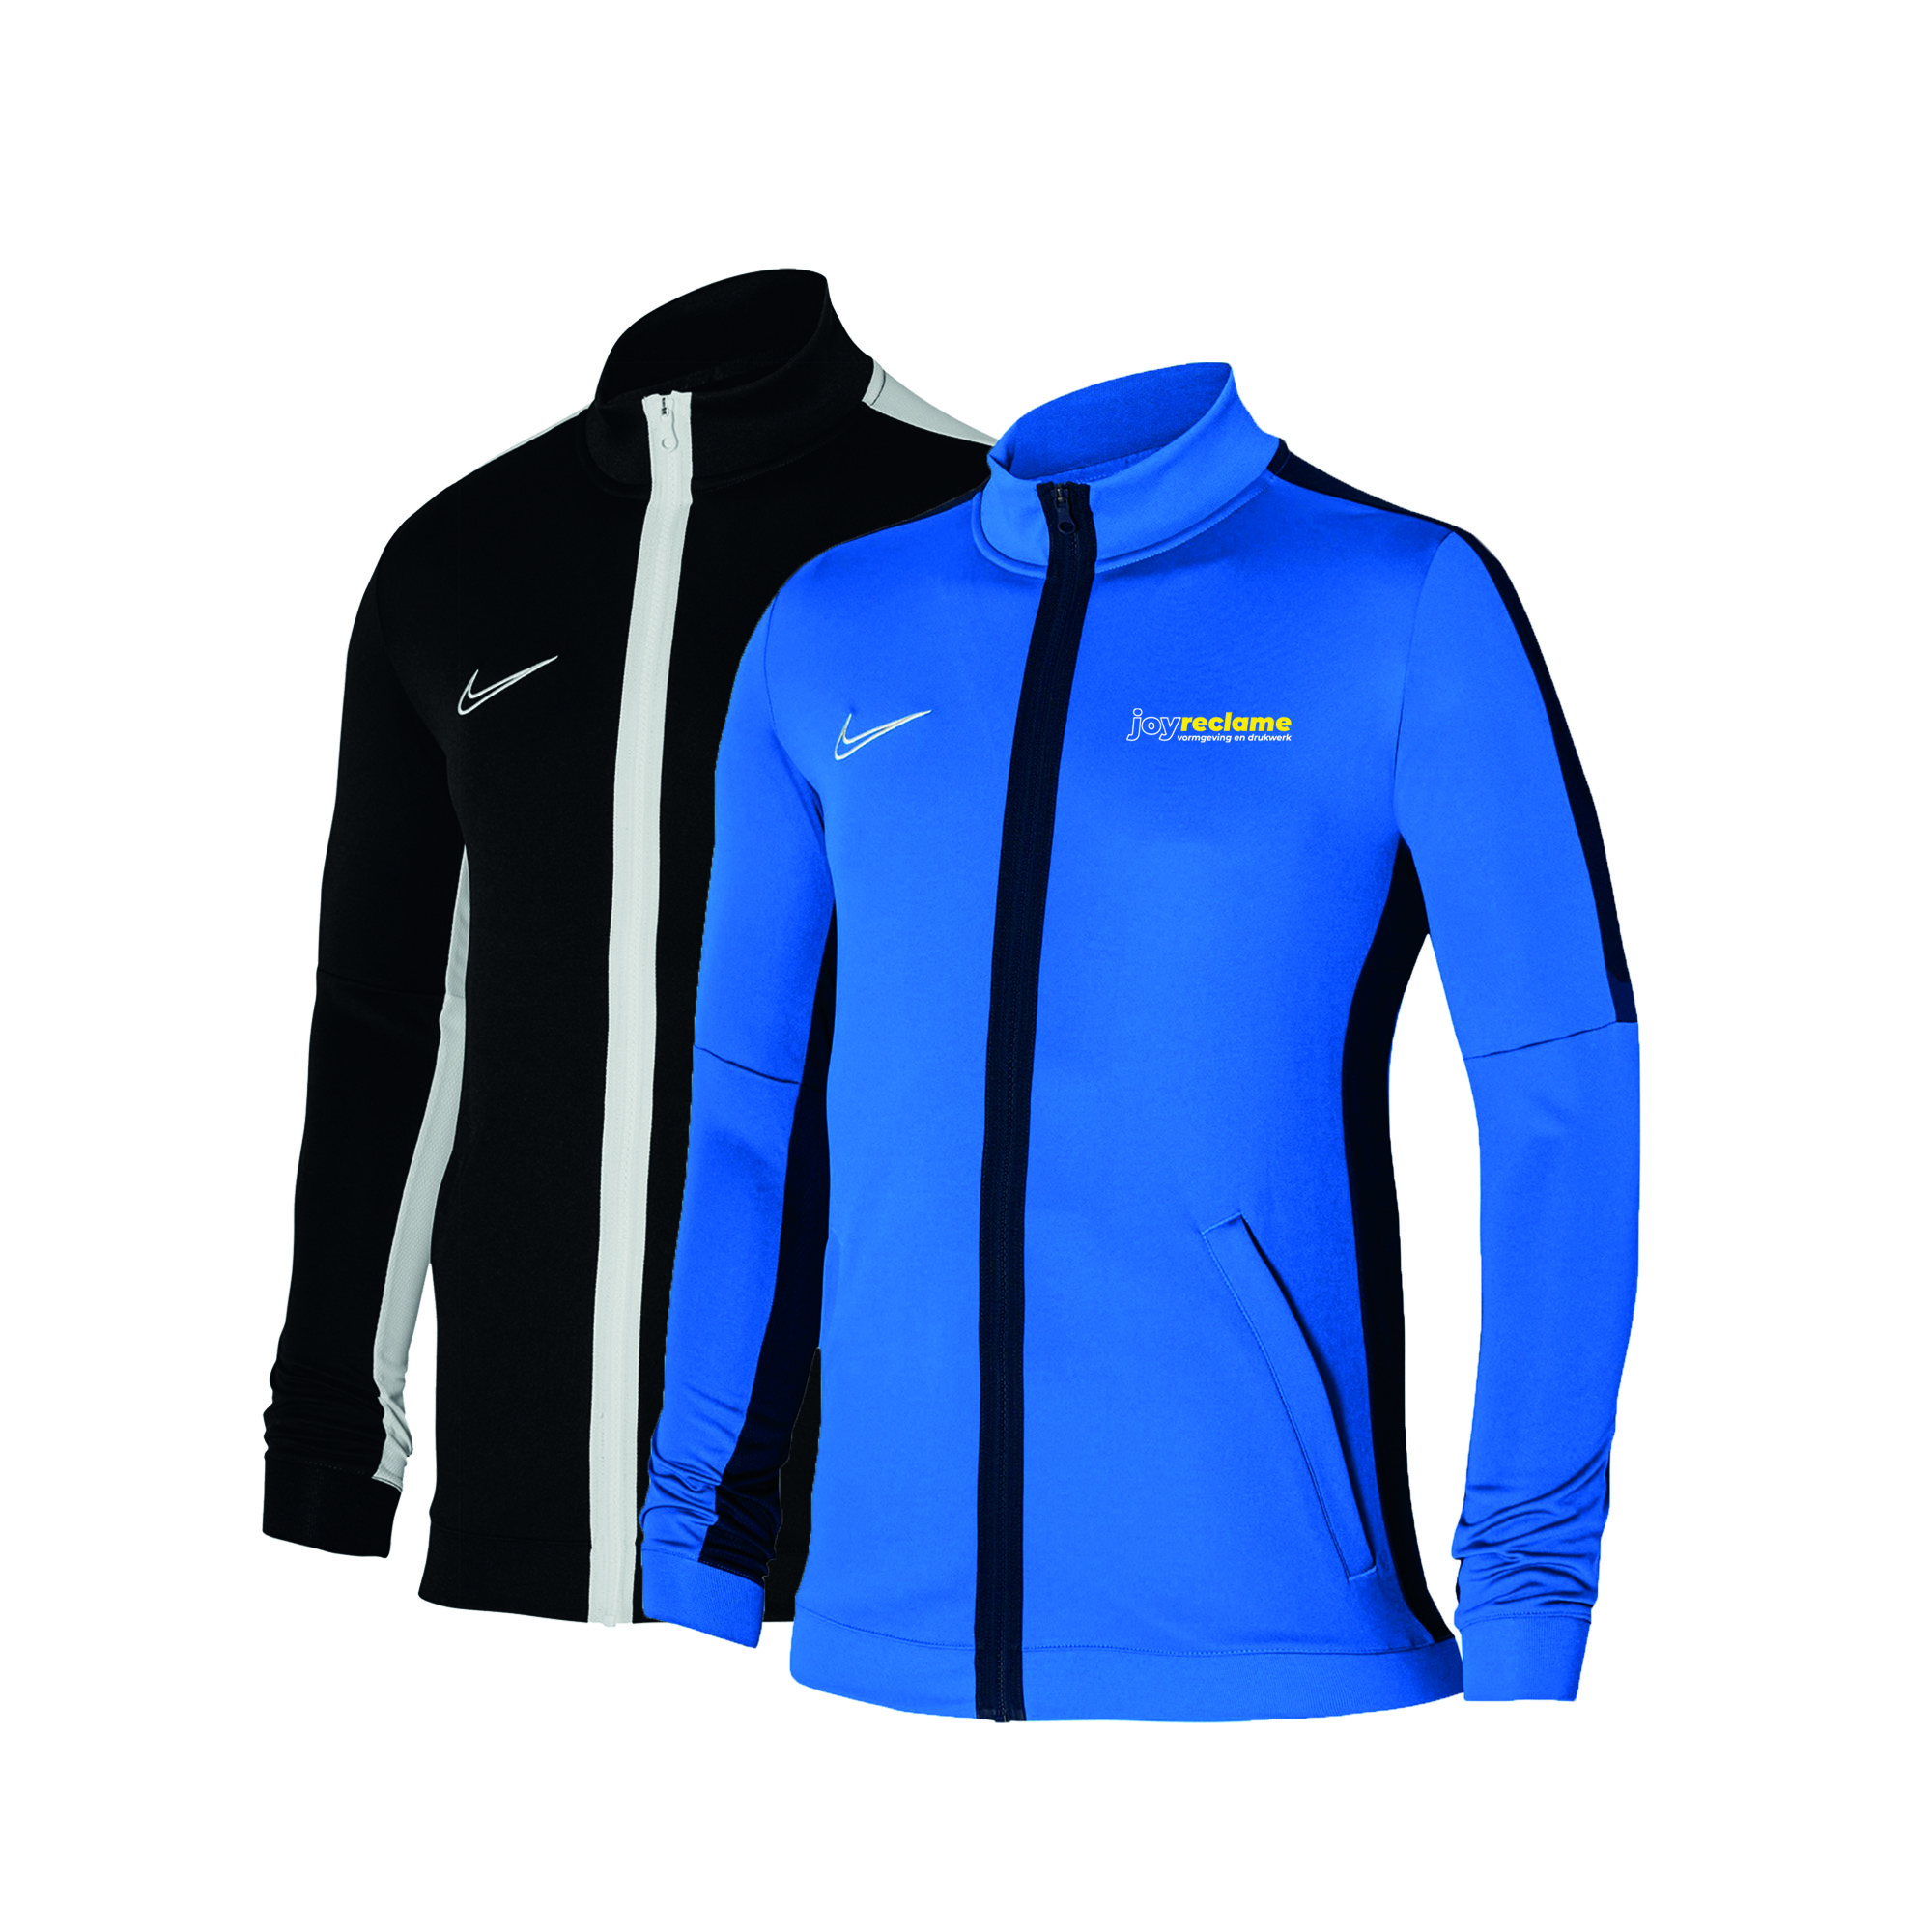 Polair Voorzichtigheid herhaling Nike trainingsjack bedrukken - Full-color, snel en goedkoop!